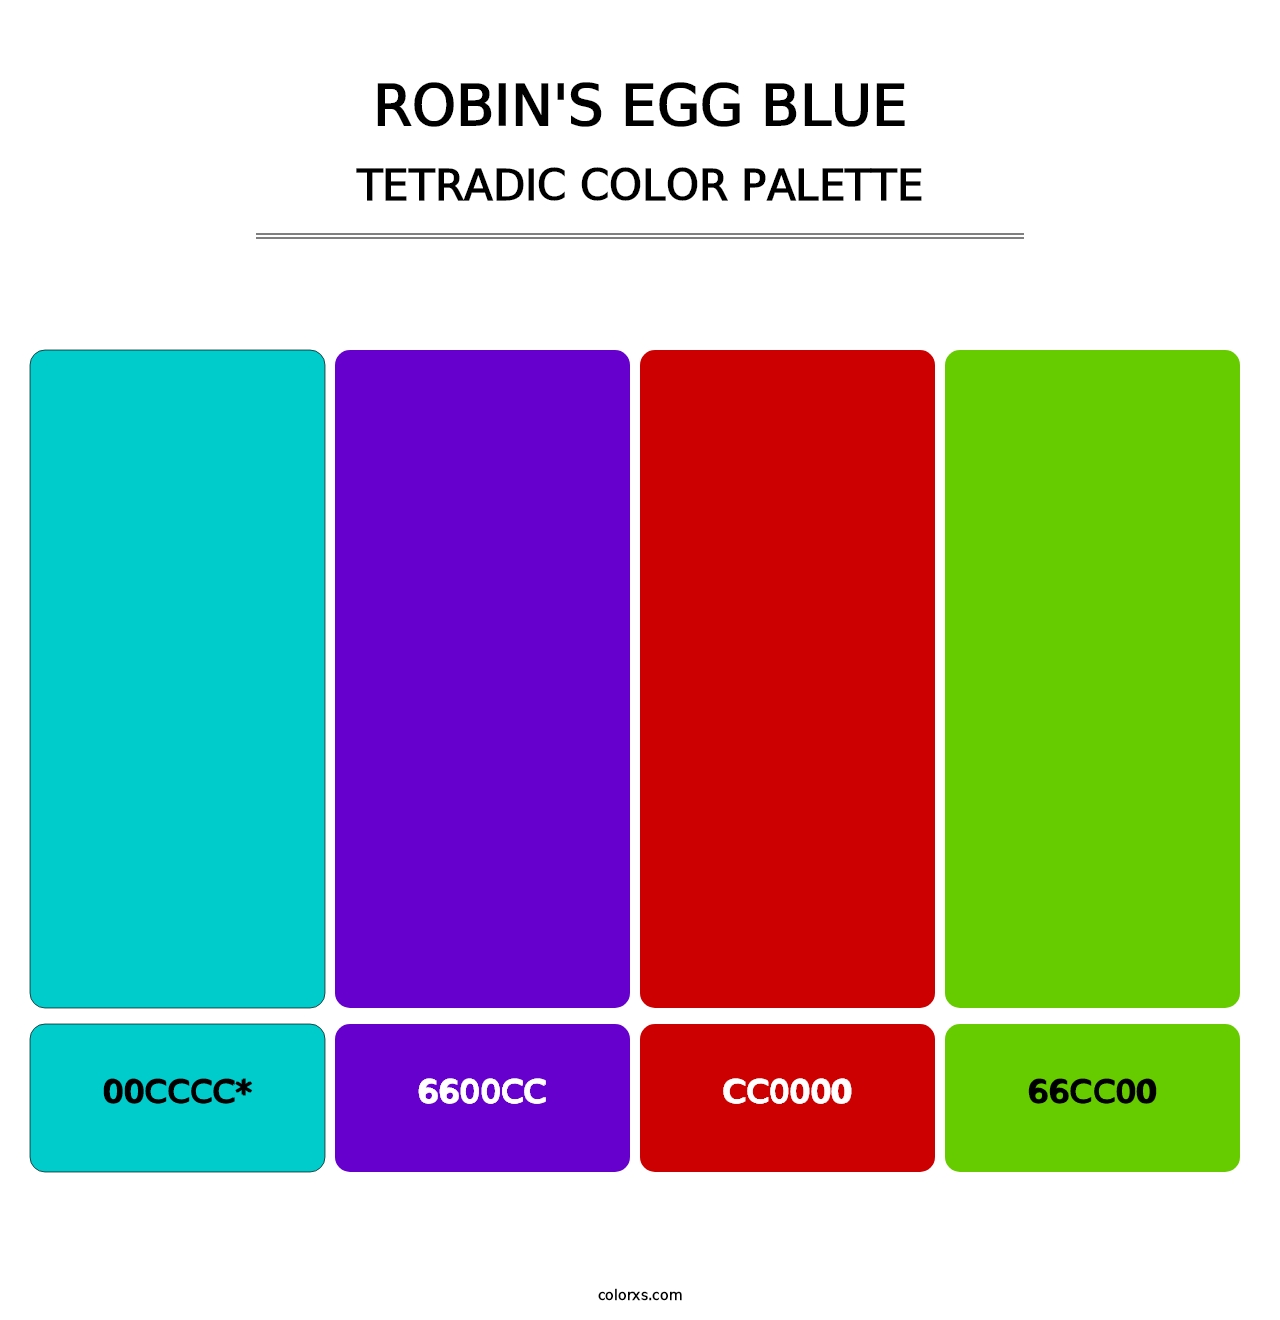 Robin's Egg Blue - Tetradic Color Palette